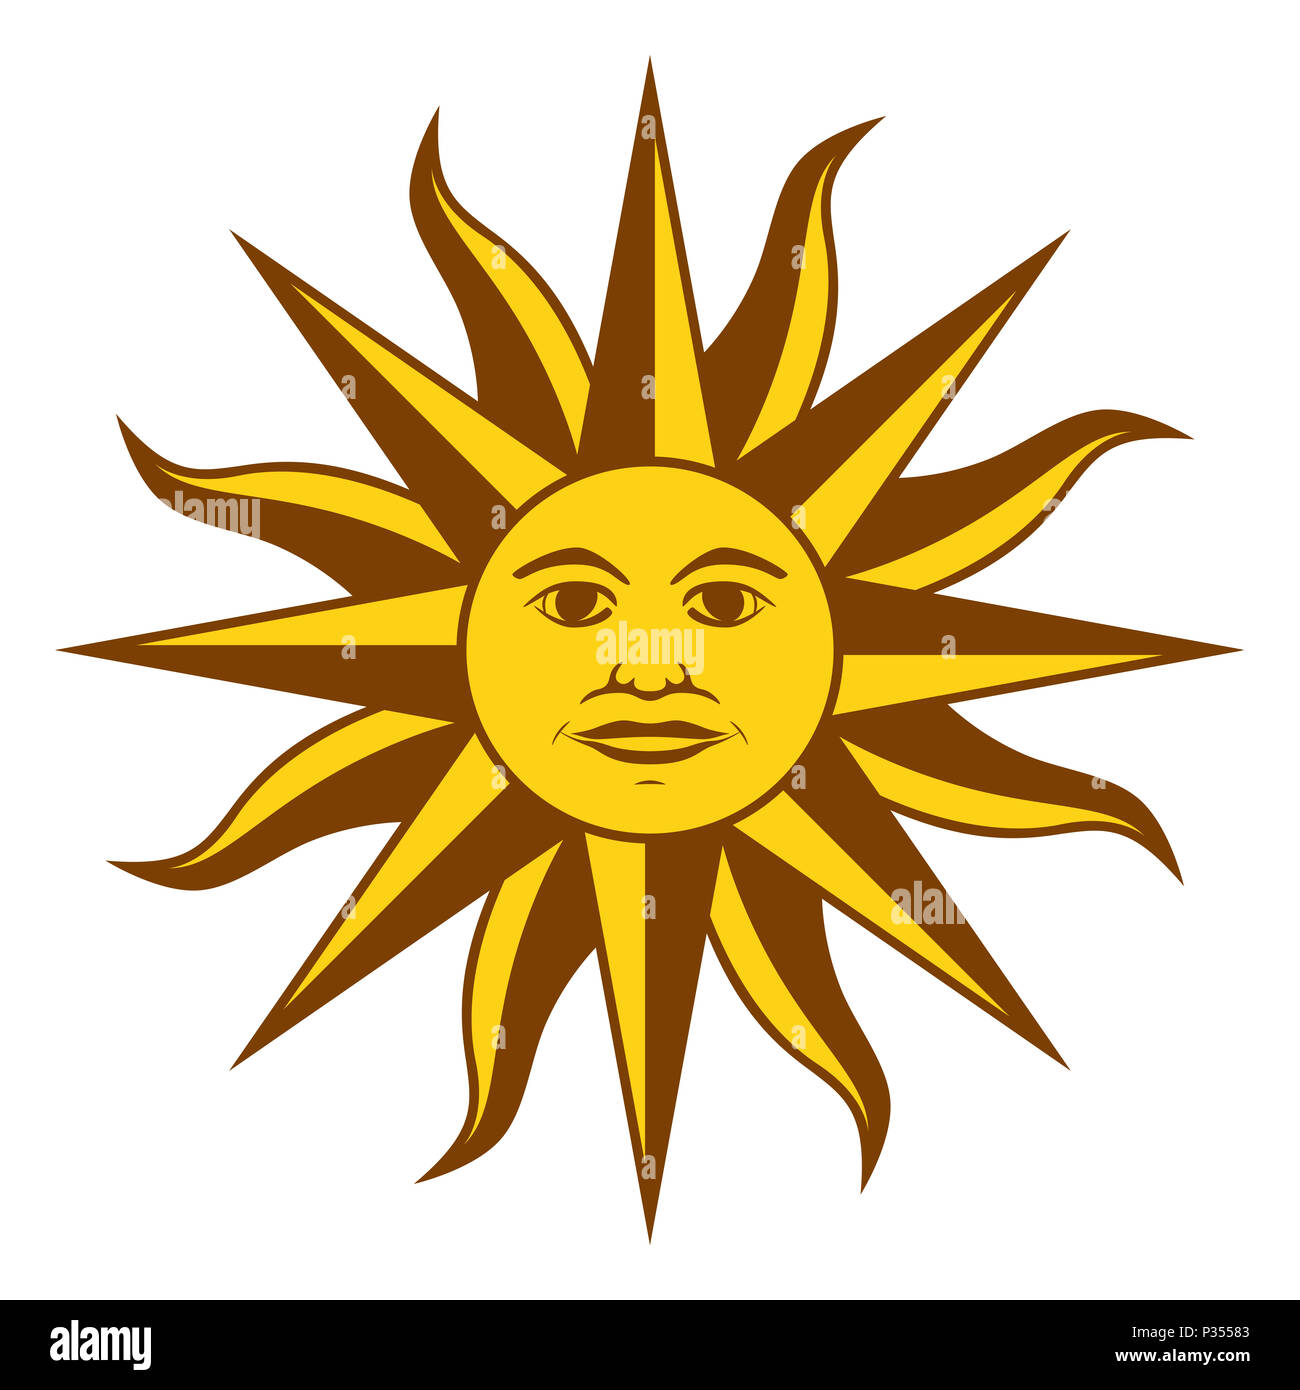 Sun Mai, Spanisch Sol de Mayo, ein nationales Emblem von Uruguay auf die Landesflagge. Strahlend goldgelbe Sonne mit Gesicht und Strahlen. Abbildung. Stockfoto